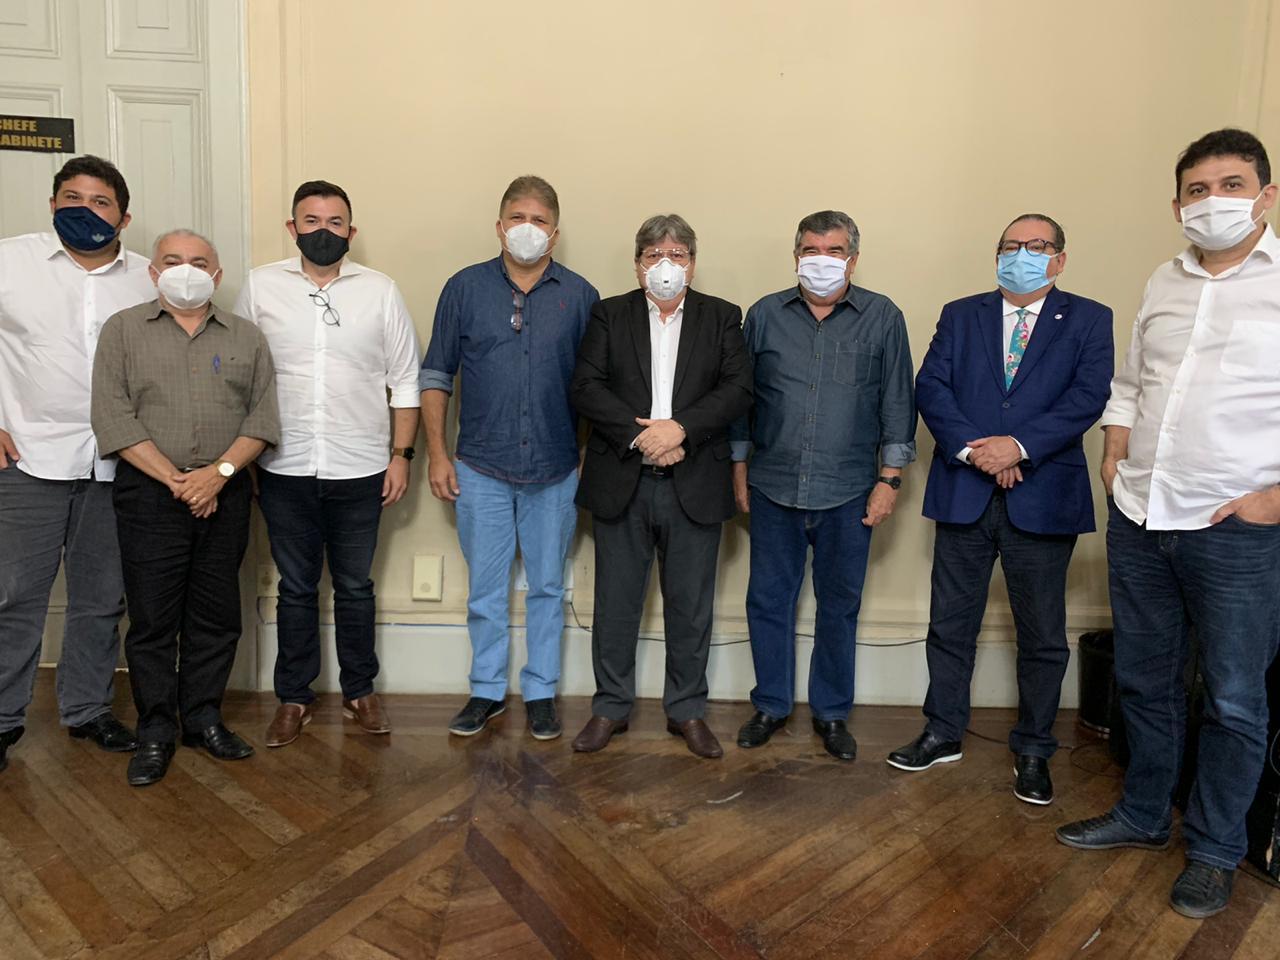 Grupo Paulino deixa a oposição, adere ao governo e firma aliança com João Azevêdo para a prefeitura de Guarabira na eleição 2020